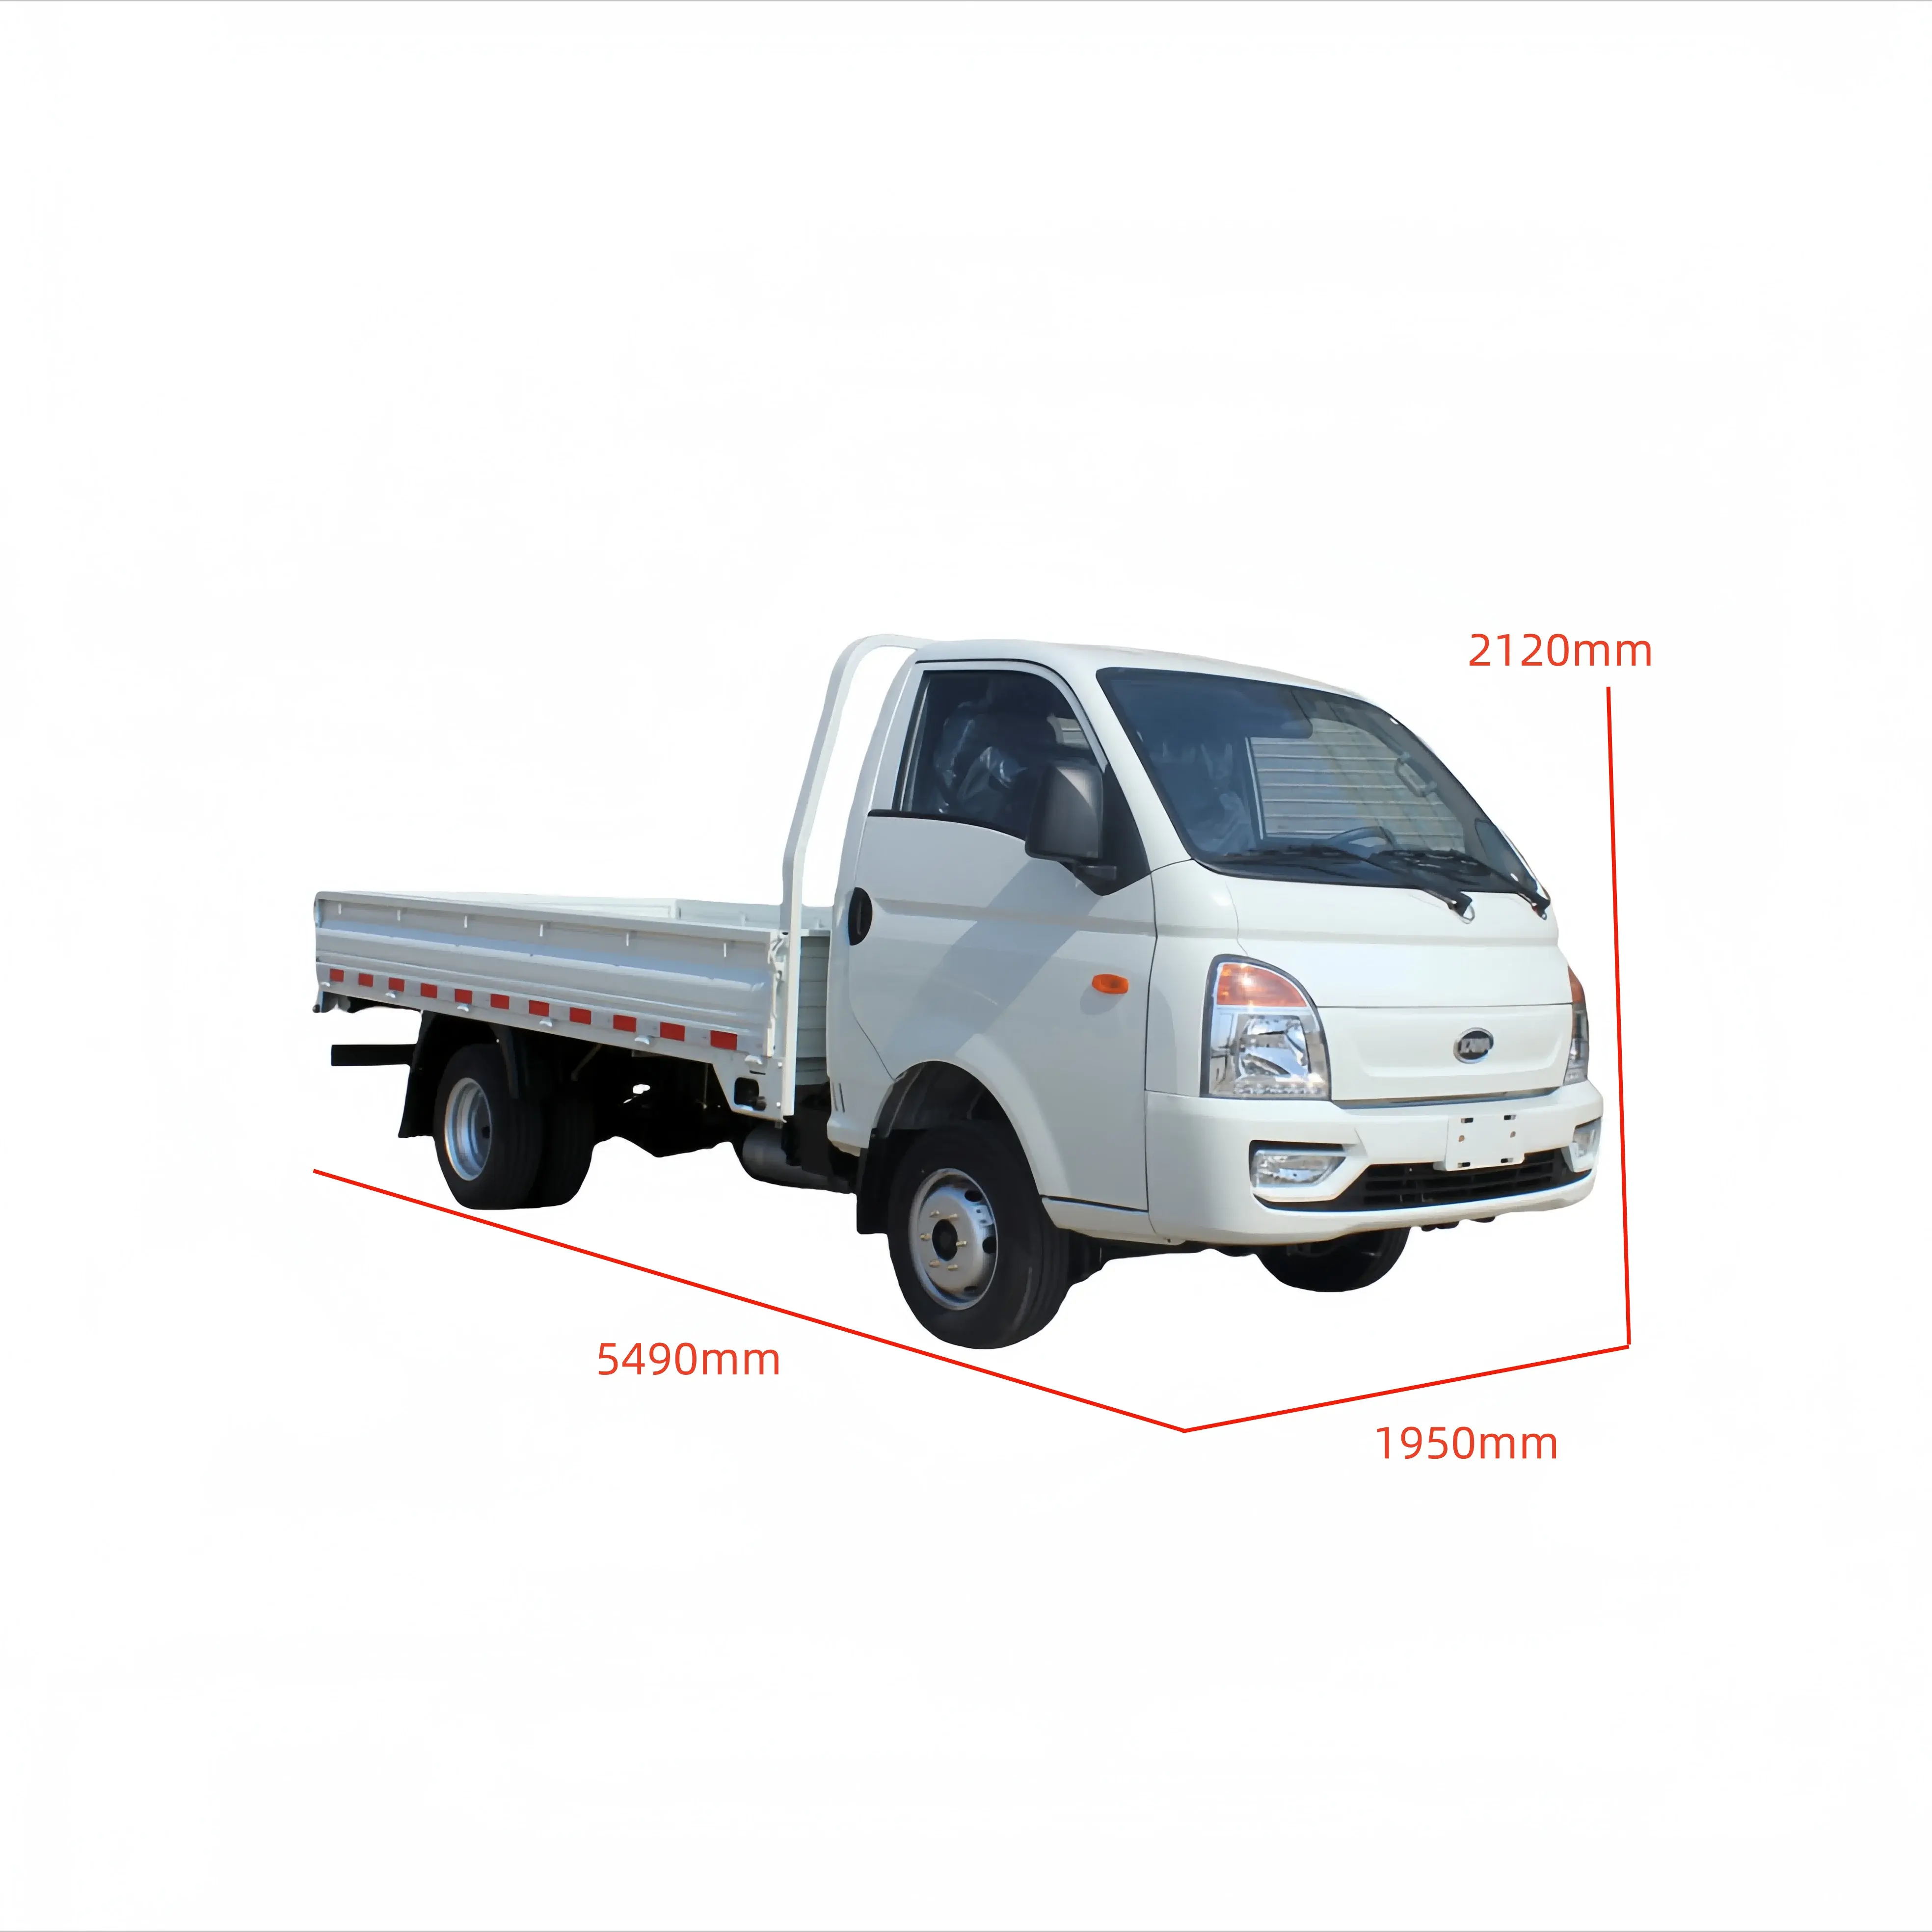 यूरोप बाजार डंप ट्रक के लिए इलेक्ट्रिक 4x4 वाहन इलेक्ट्रिक पिकअप बिक्री